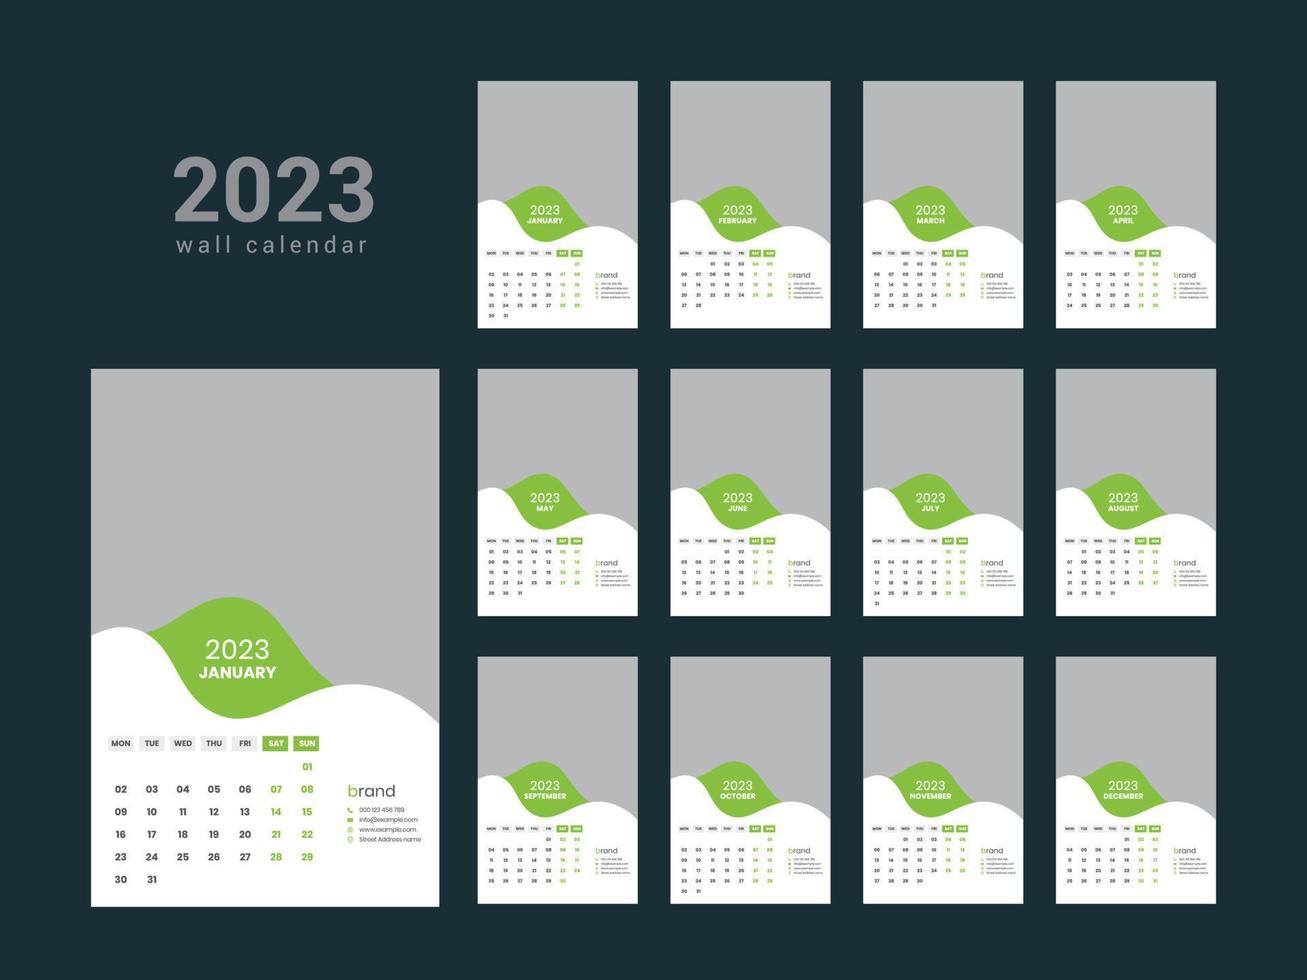 calendario de pared 2023 vector